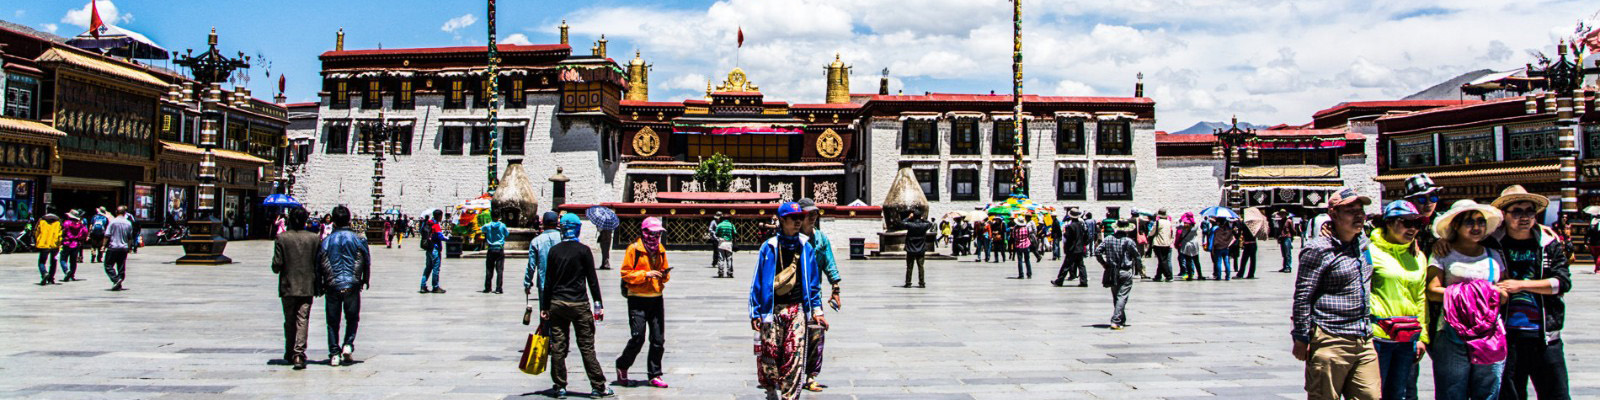 3 Days Lhasa Tour